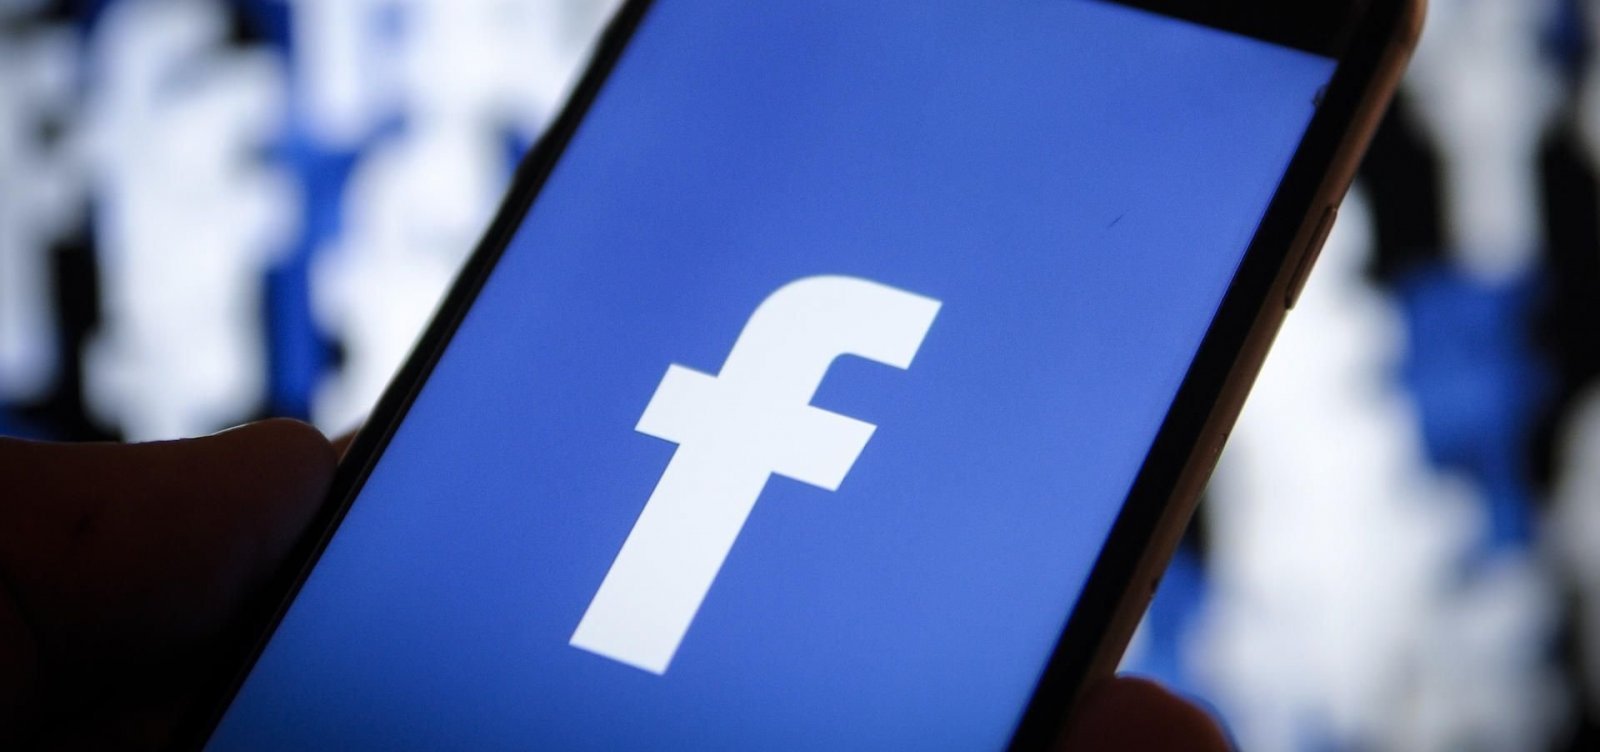 Facebook remove mais de 140 mil posts no Brasil por violarem políticas contra interferência eleitoral